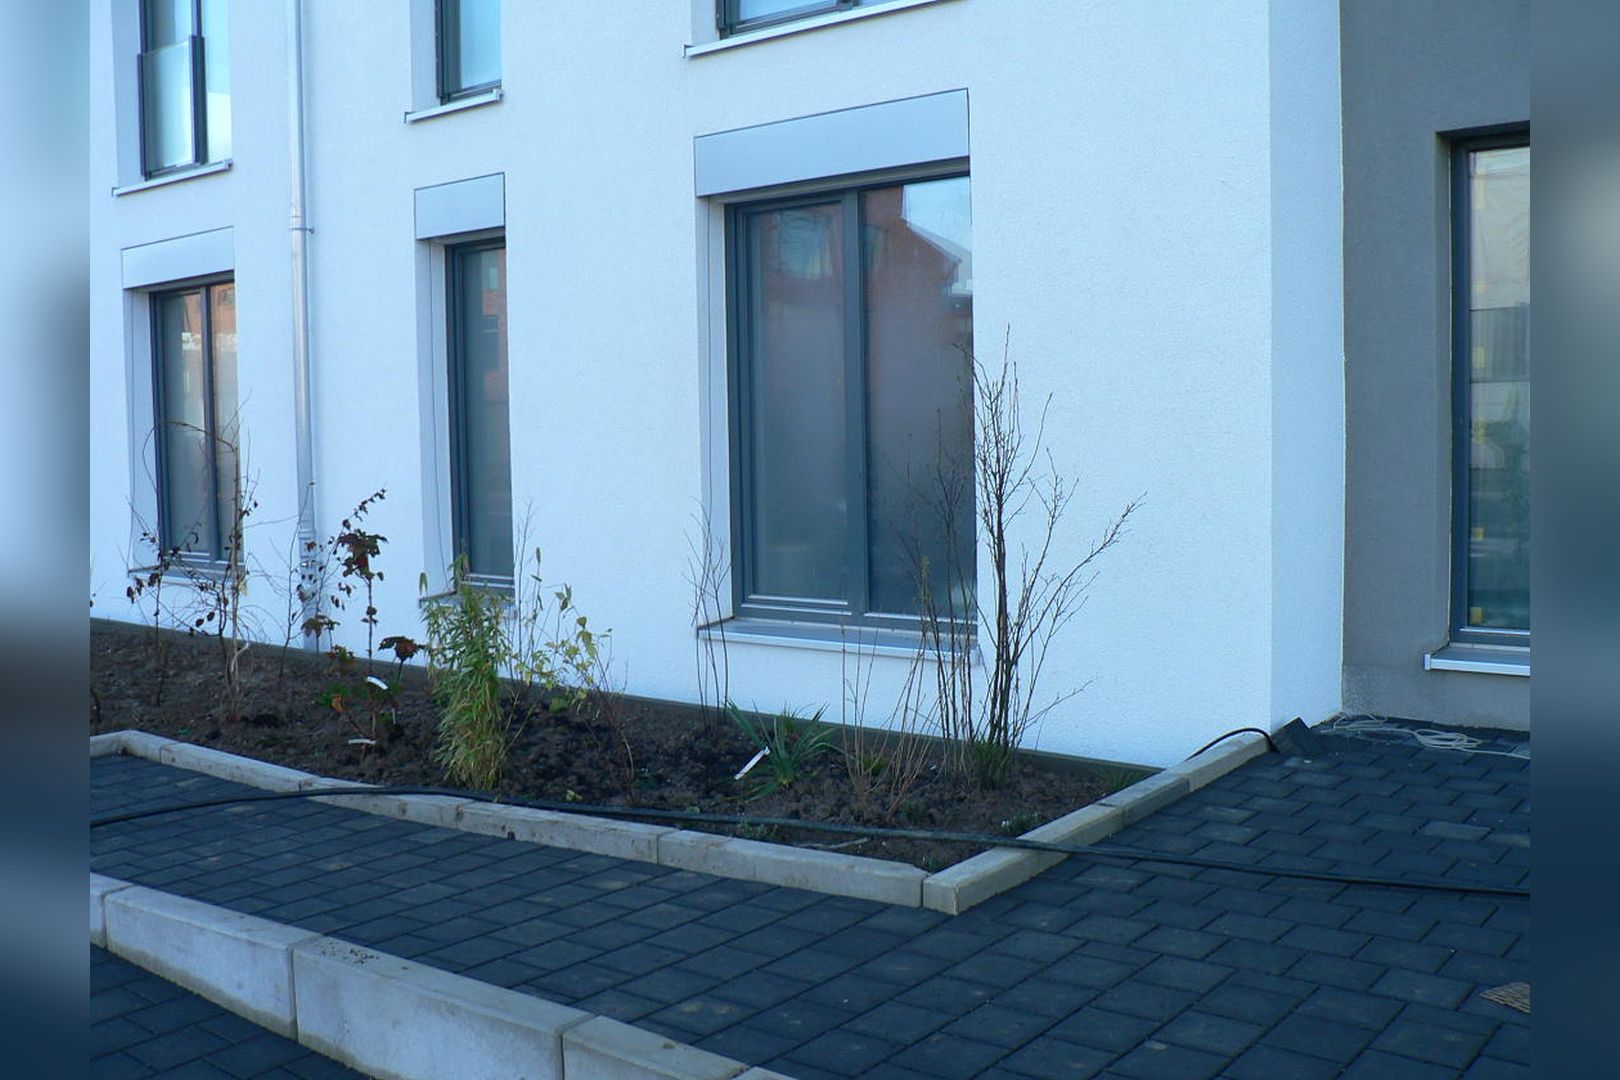 Immobilie Nr.Köln 001.3 - 2-Raum-Wohnung HAUS 1, mit Terrasse u. Gartennutzung, mit Aufzug im Haus! - Bild 4.jpg